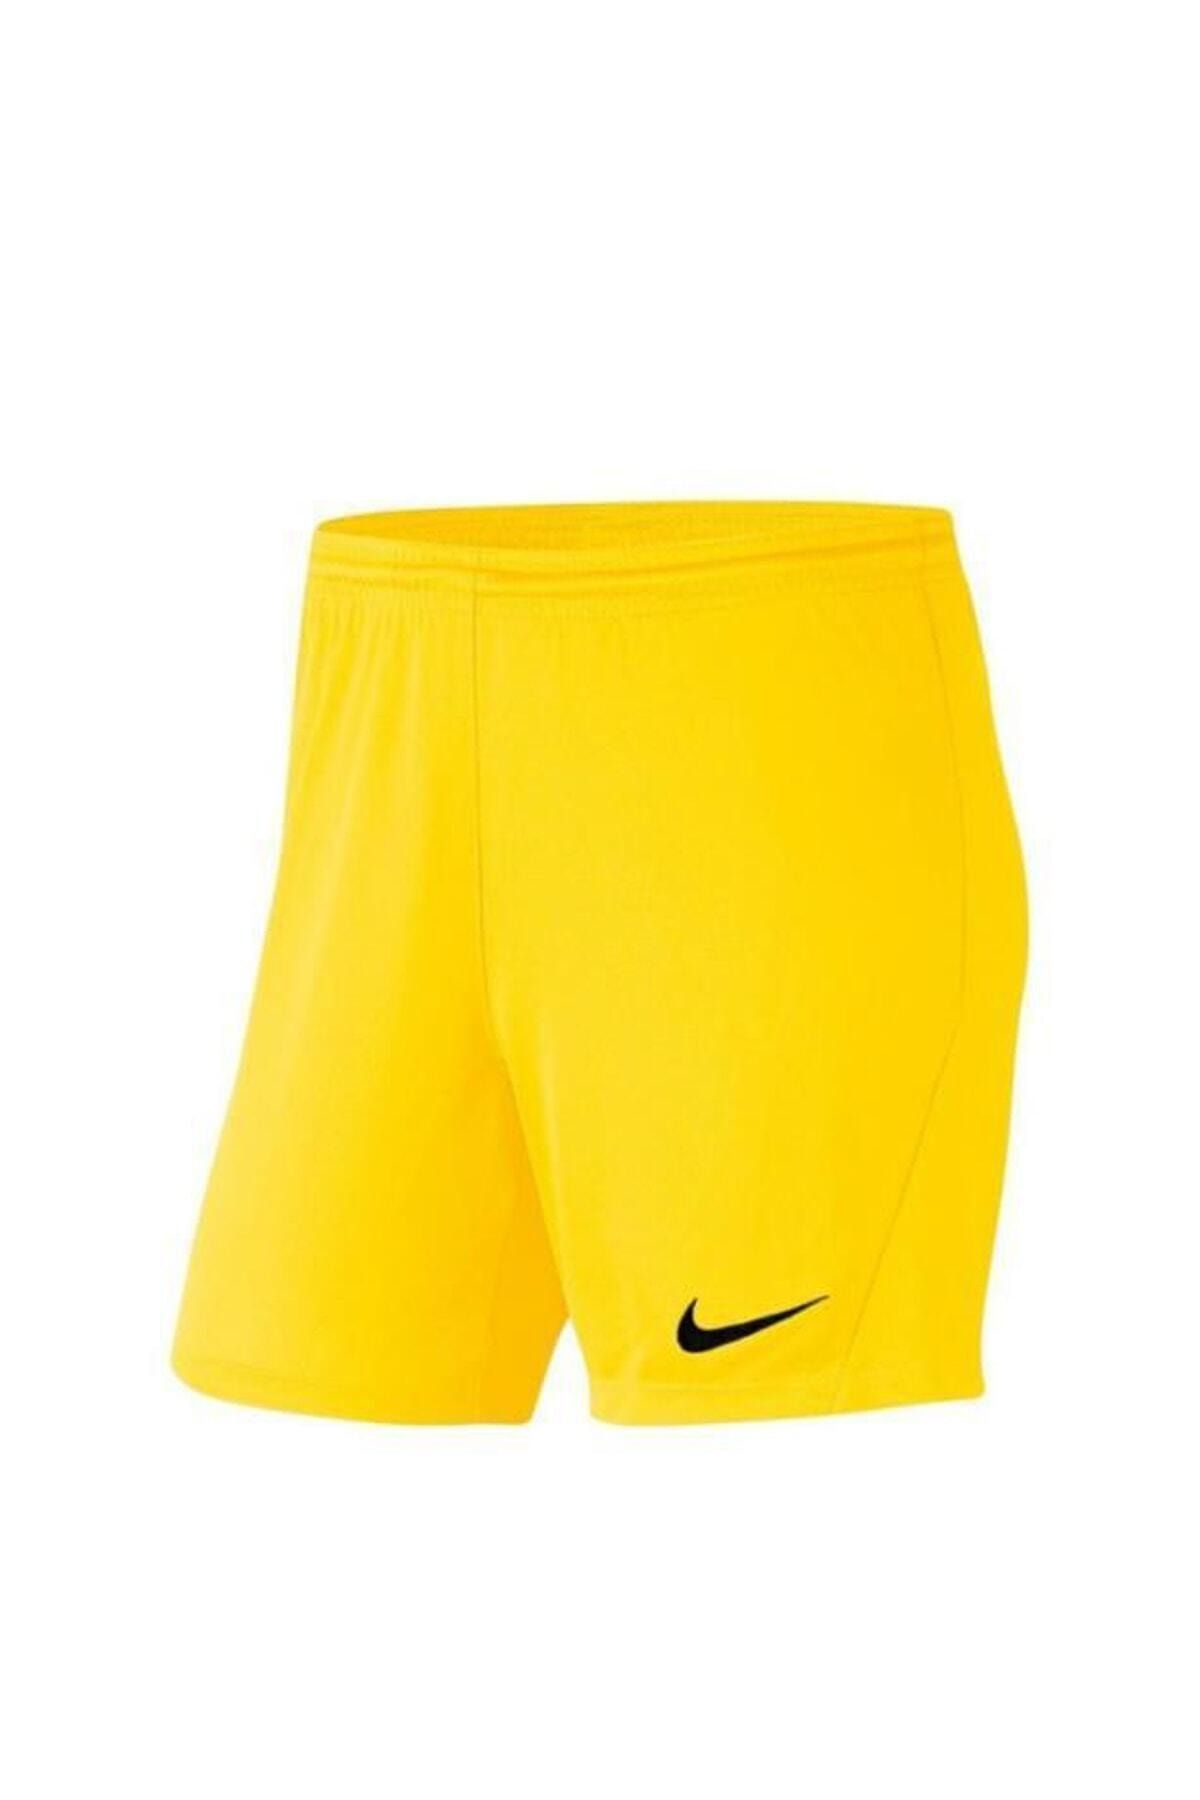 Nike Kadın Sarı Şort